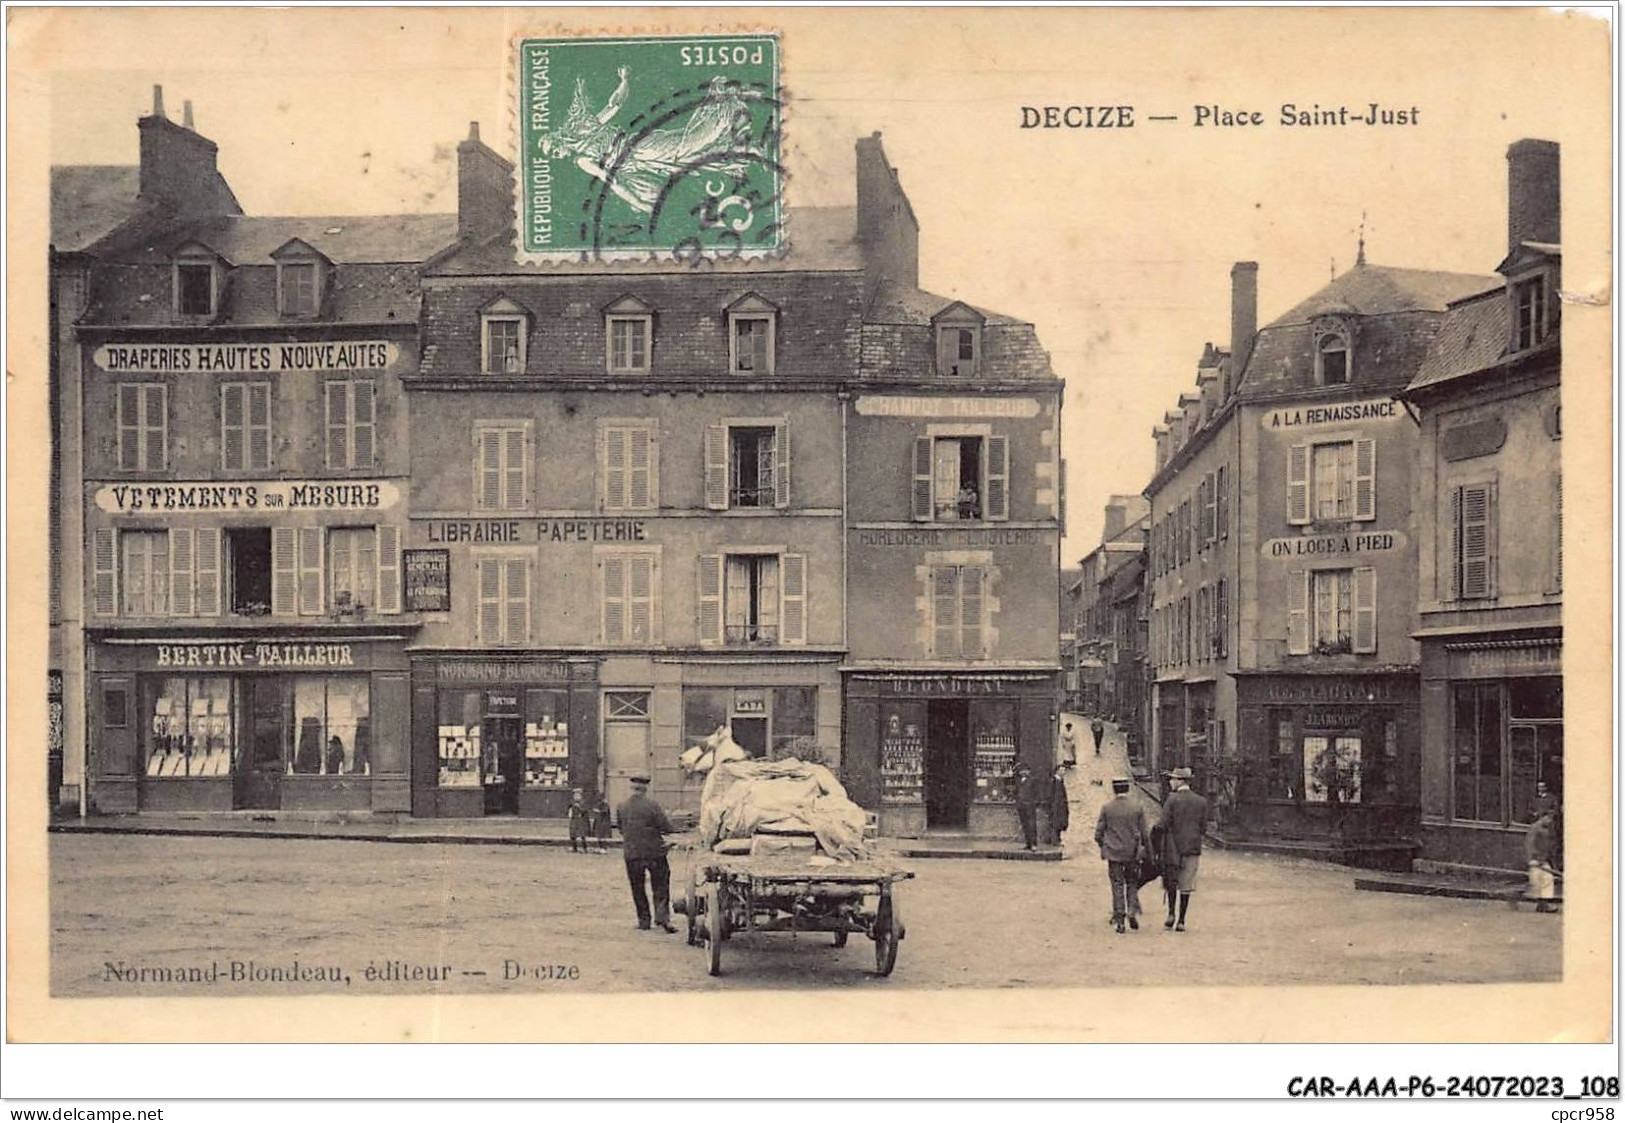 CAR-AAAP6-58-0435 - DECIZE - Place Saint Just - Commerces,Tailleur Bertin, Librairie - Decize